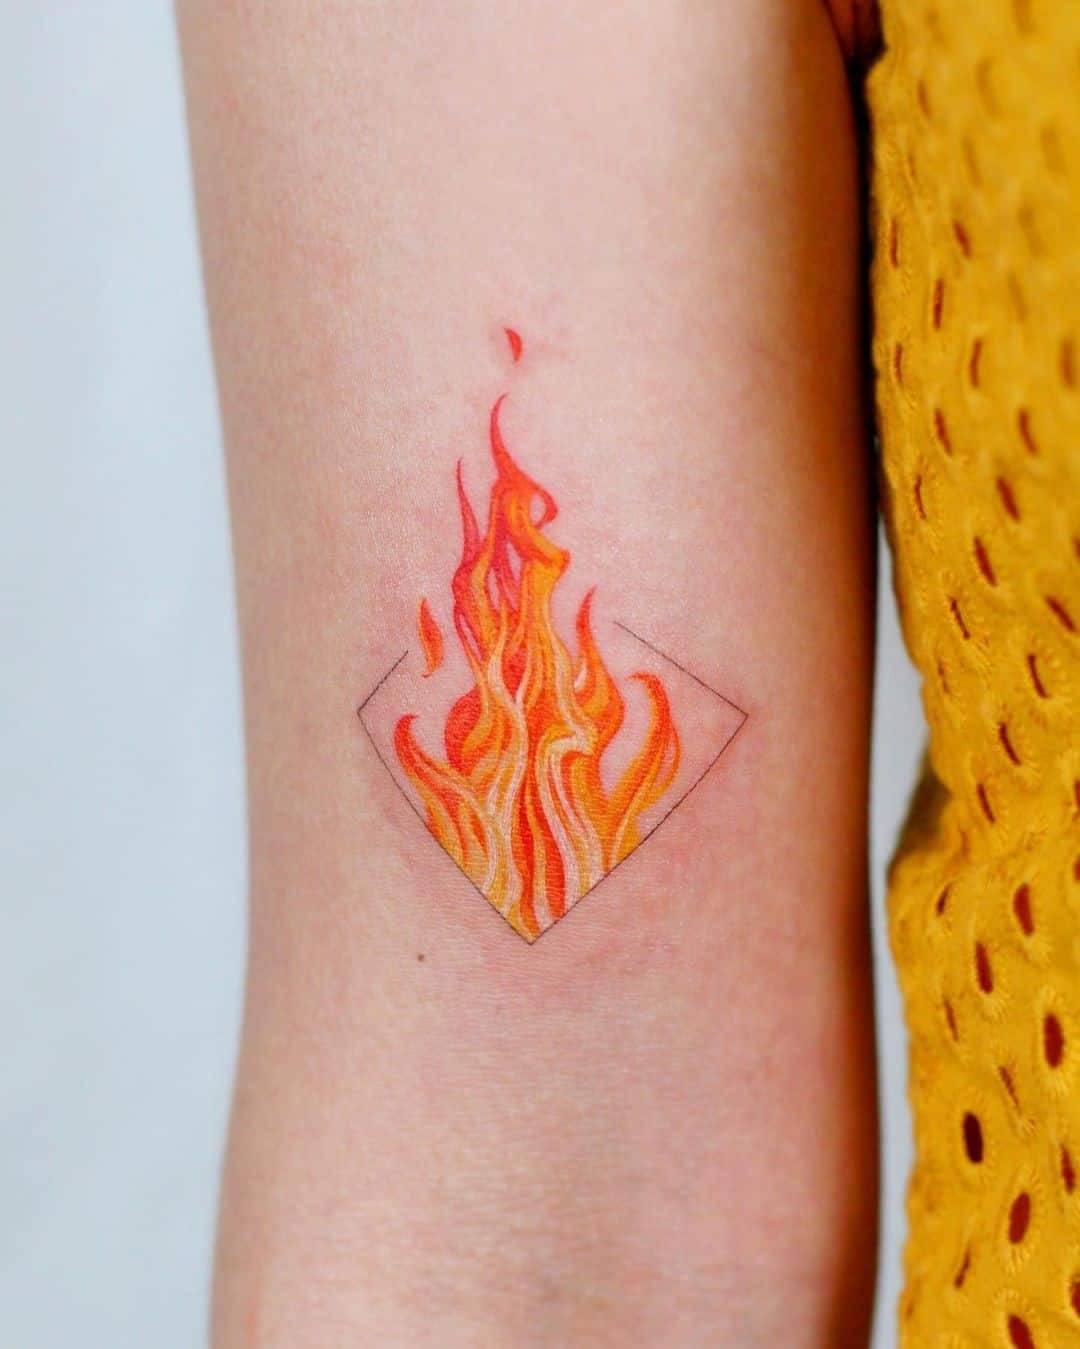 Tatuaje de fuego en tinta roja 